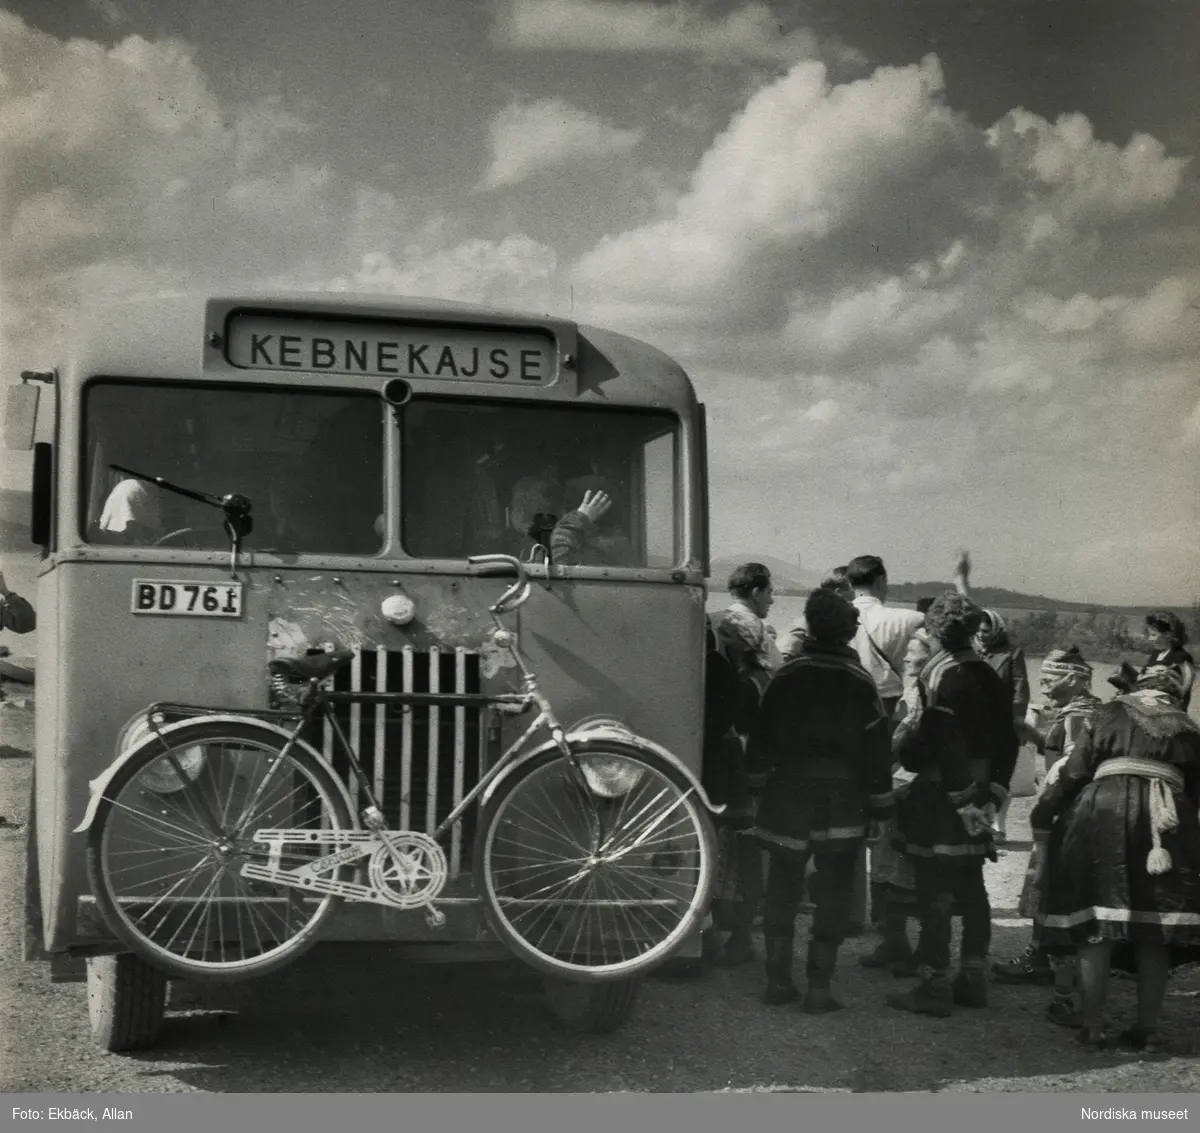 Samer och turister vid buss. Holmajärvi, Norrbotten. Bussen är skyltaad "Kebnekajse" och har en cykel monterad fram.